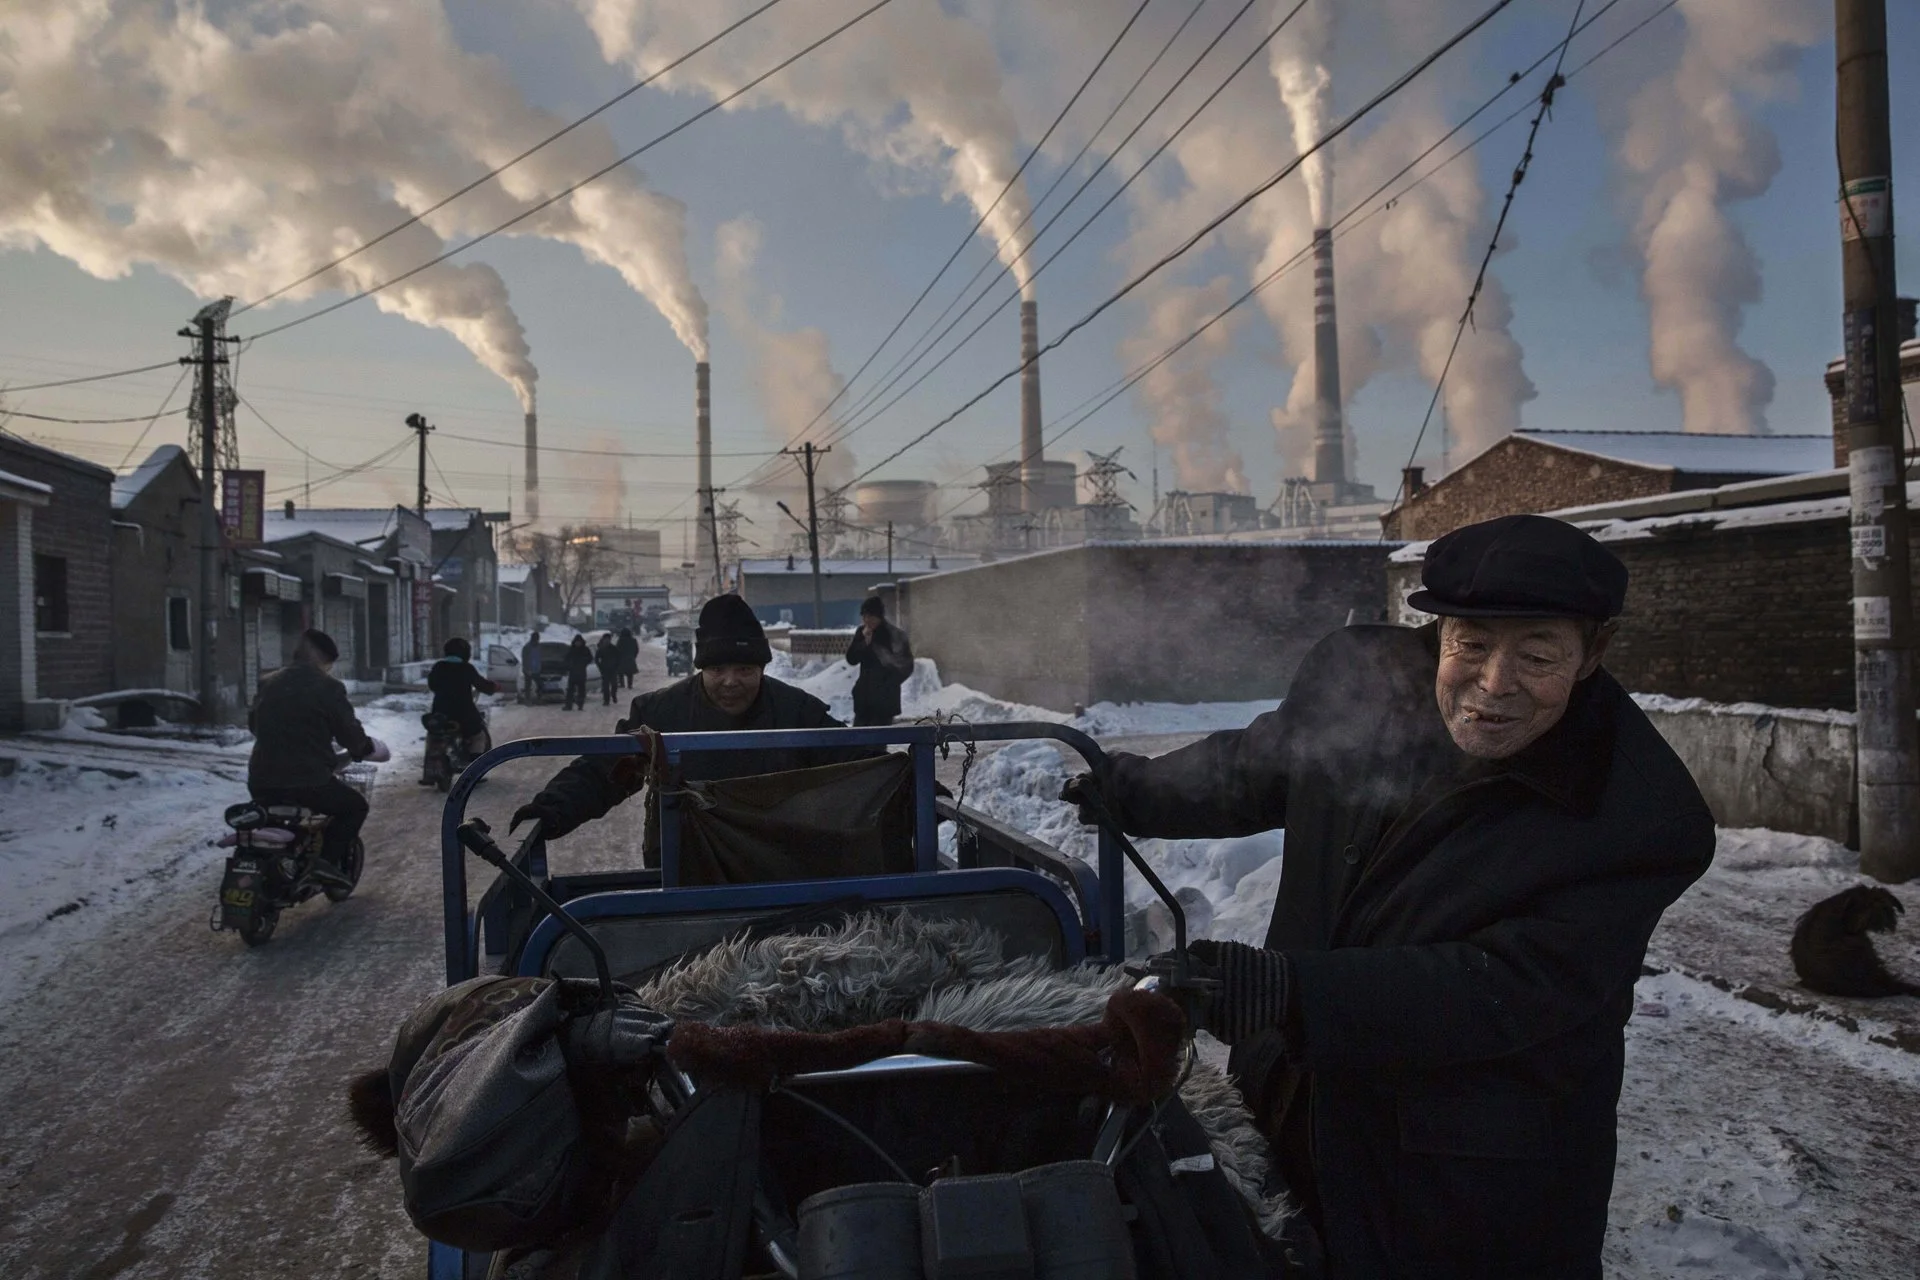 El humo sale de las chimeneas mientras los hombres empujan un triciclo por un vecindario al lado de una planta de energía a carbón en la provincia norteña de Shanxi.